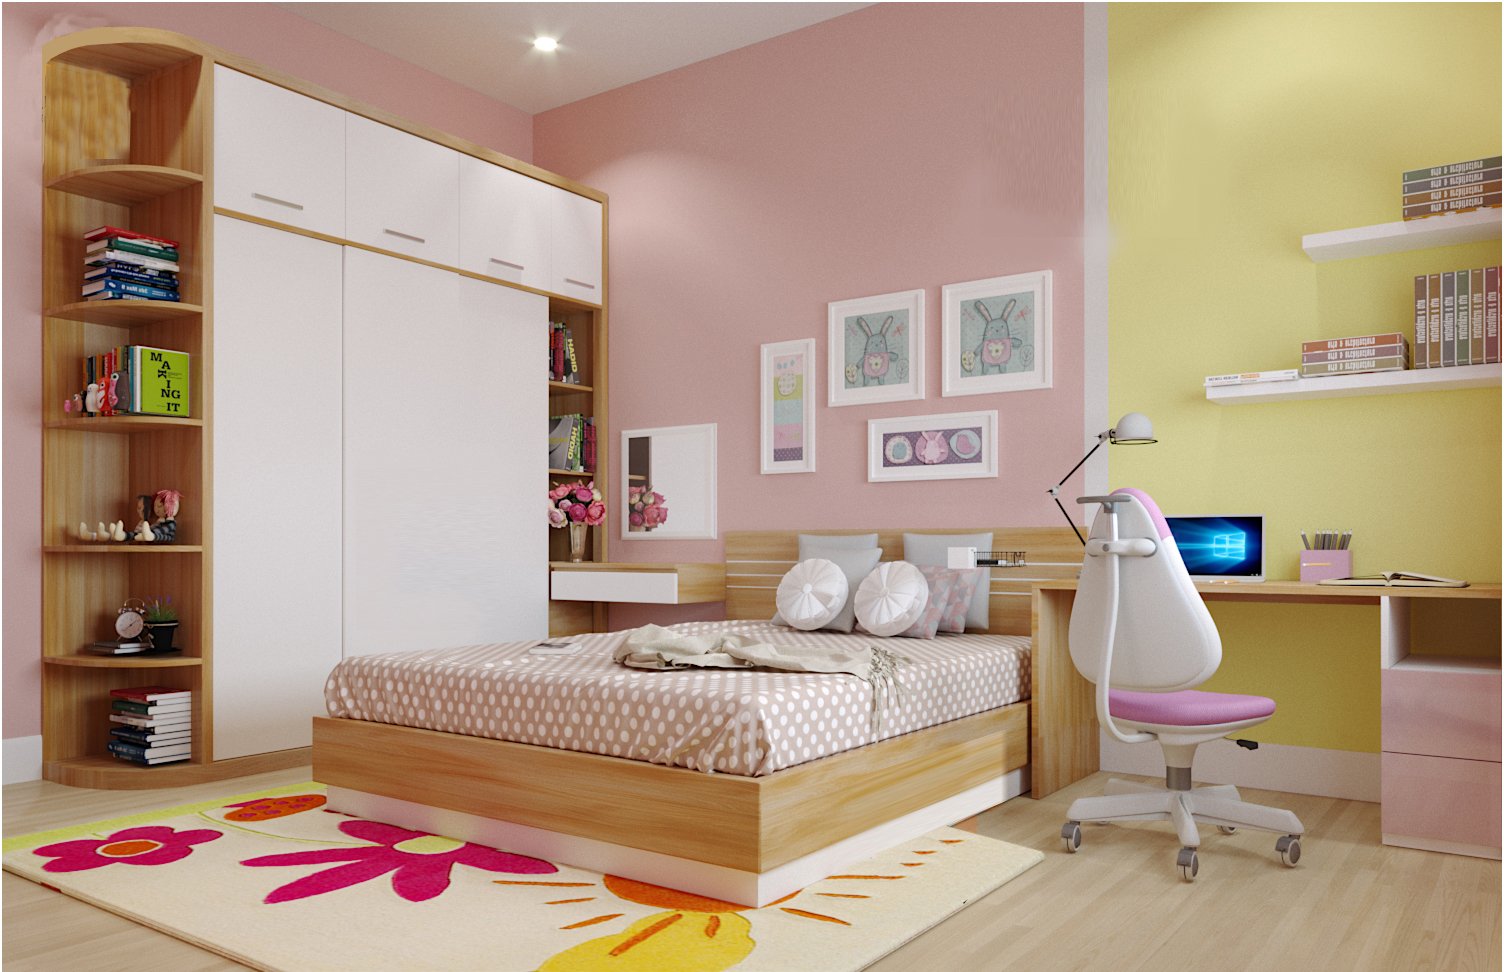 Với ba tông màu hồng pastel - trắng - vàng bơ chủ đạo, phòng ngủ con gái toát lên vẻ ngọt ngào, lãng mạn - hẳn sẽ khiến bé thích mê.